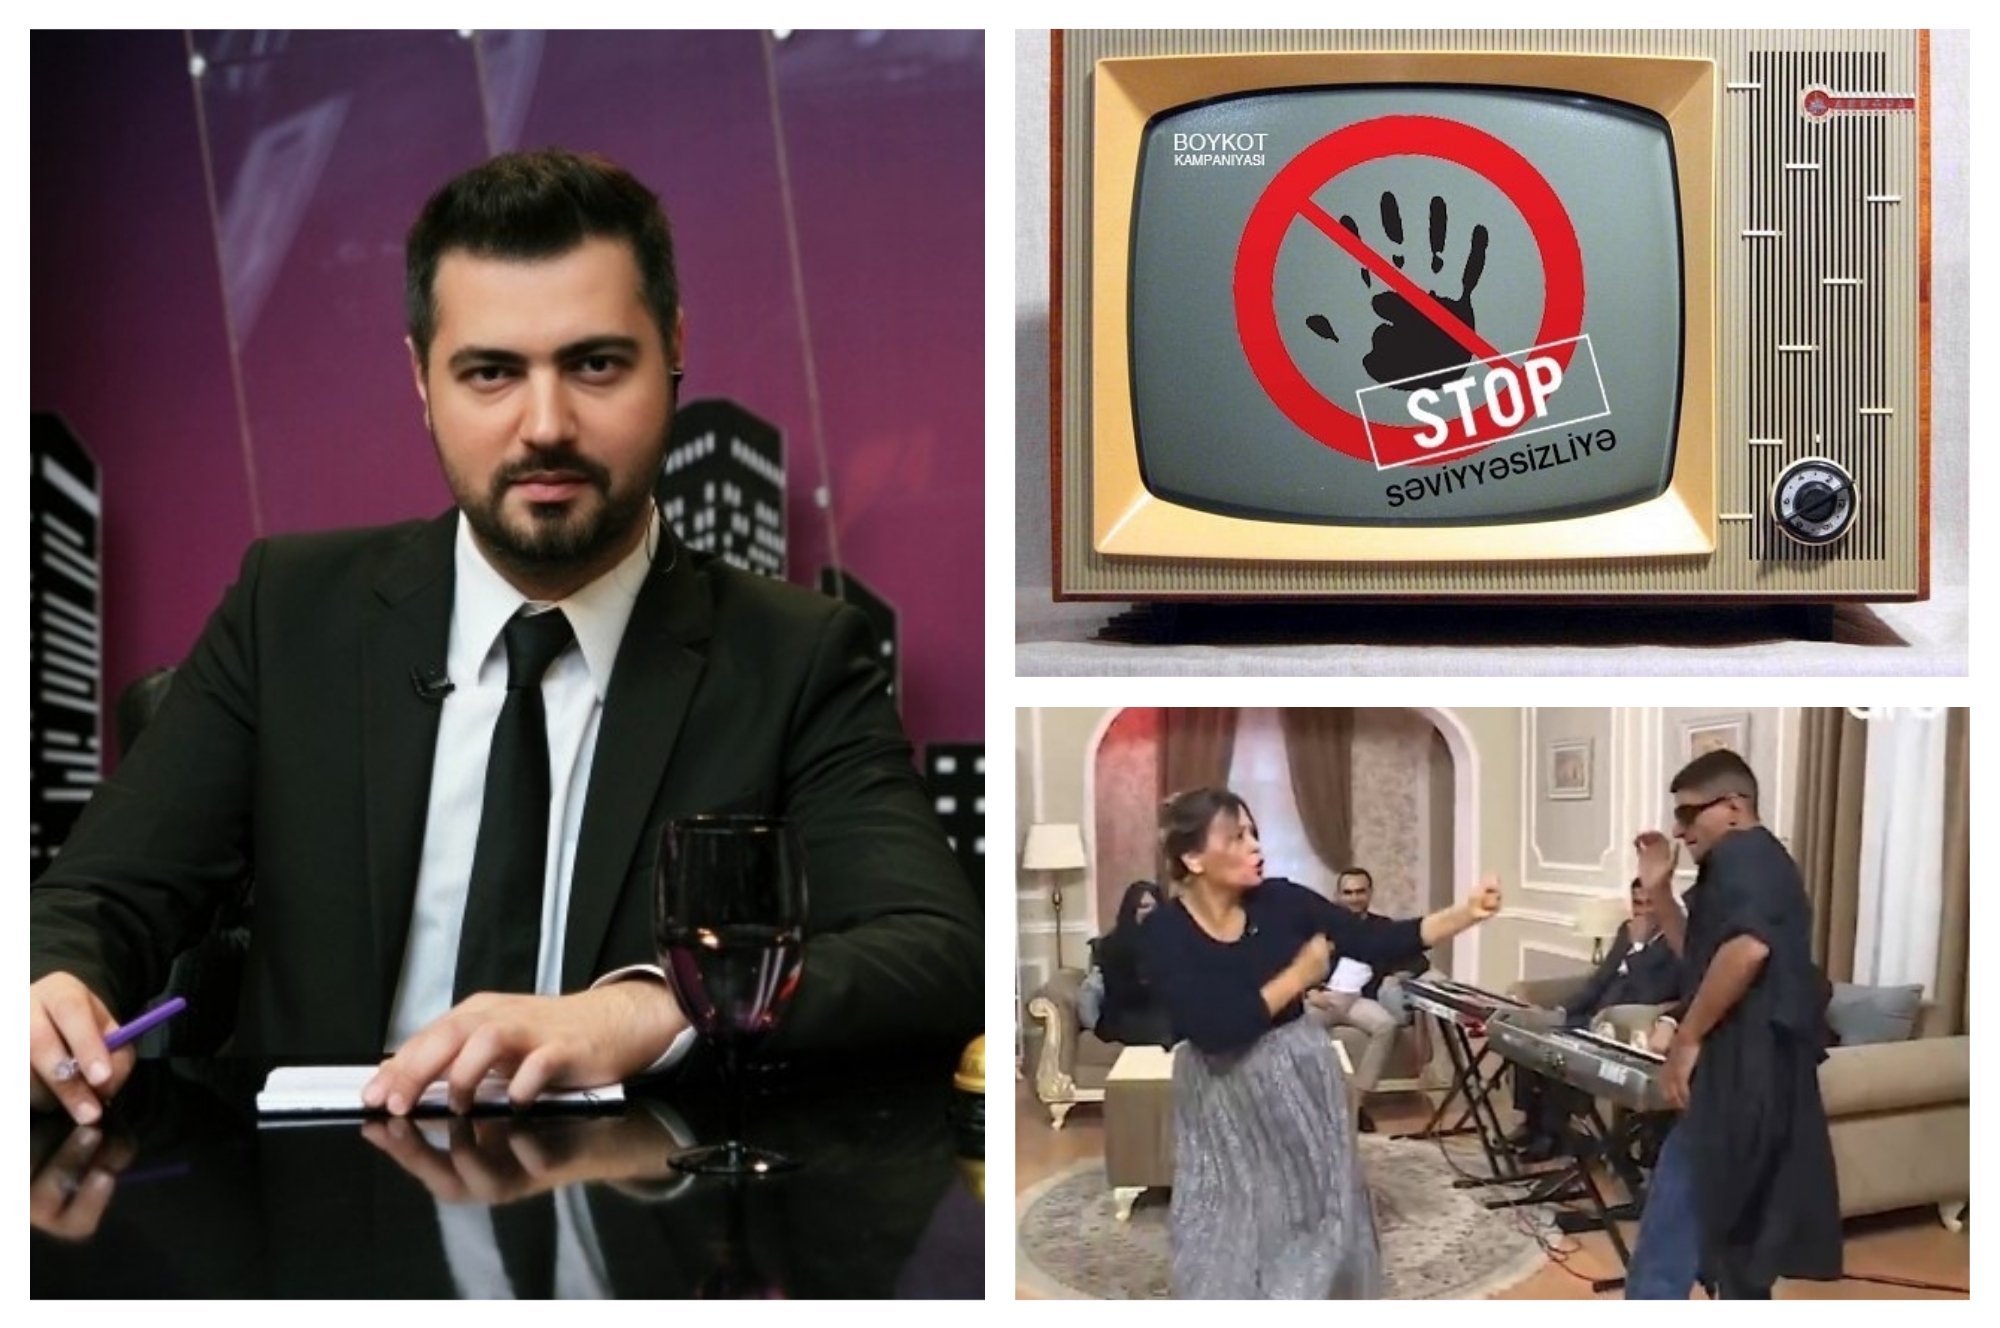 Телеведущий Ранар Мусаев объявил бойкот безобразию на ТВ: «Səviyyəsizliyə stop!» - ФОТО – ВИДЕО